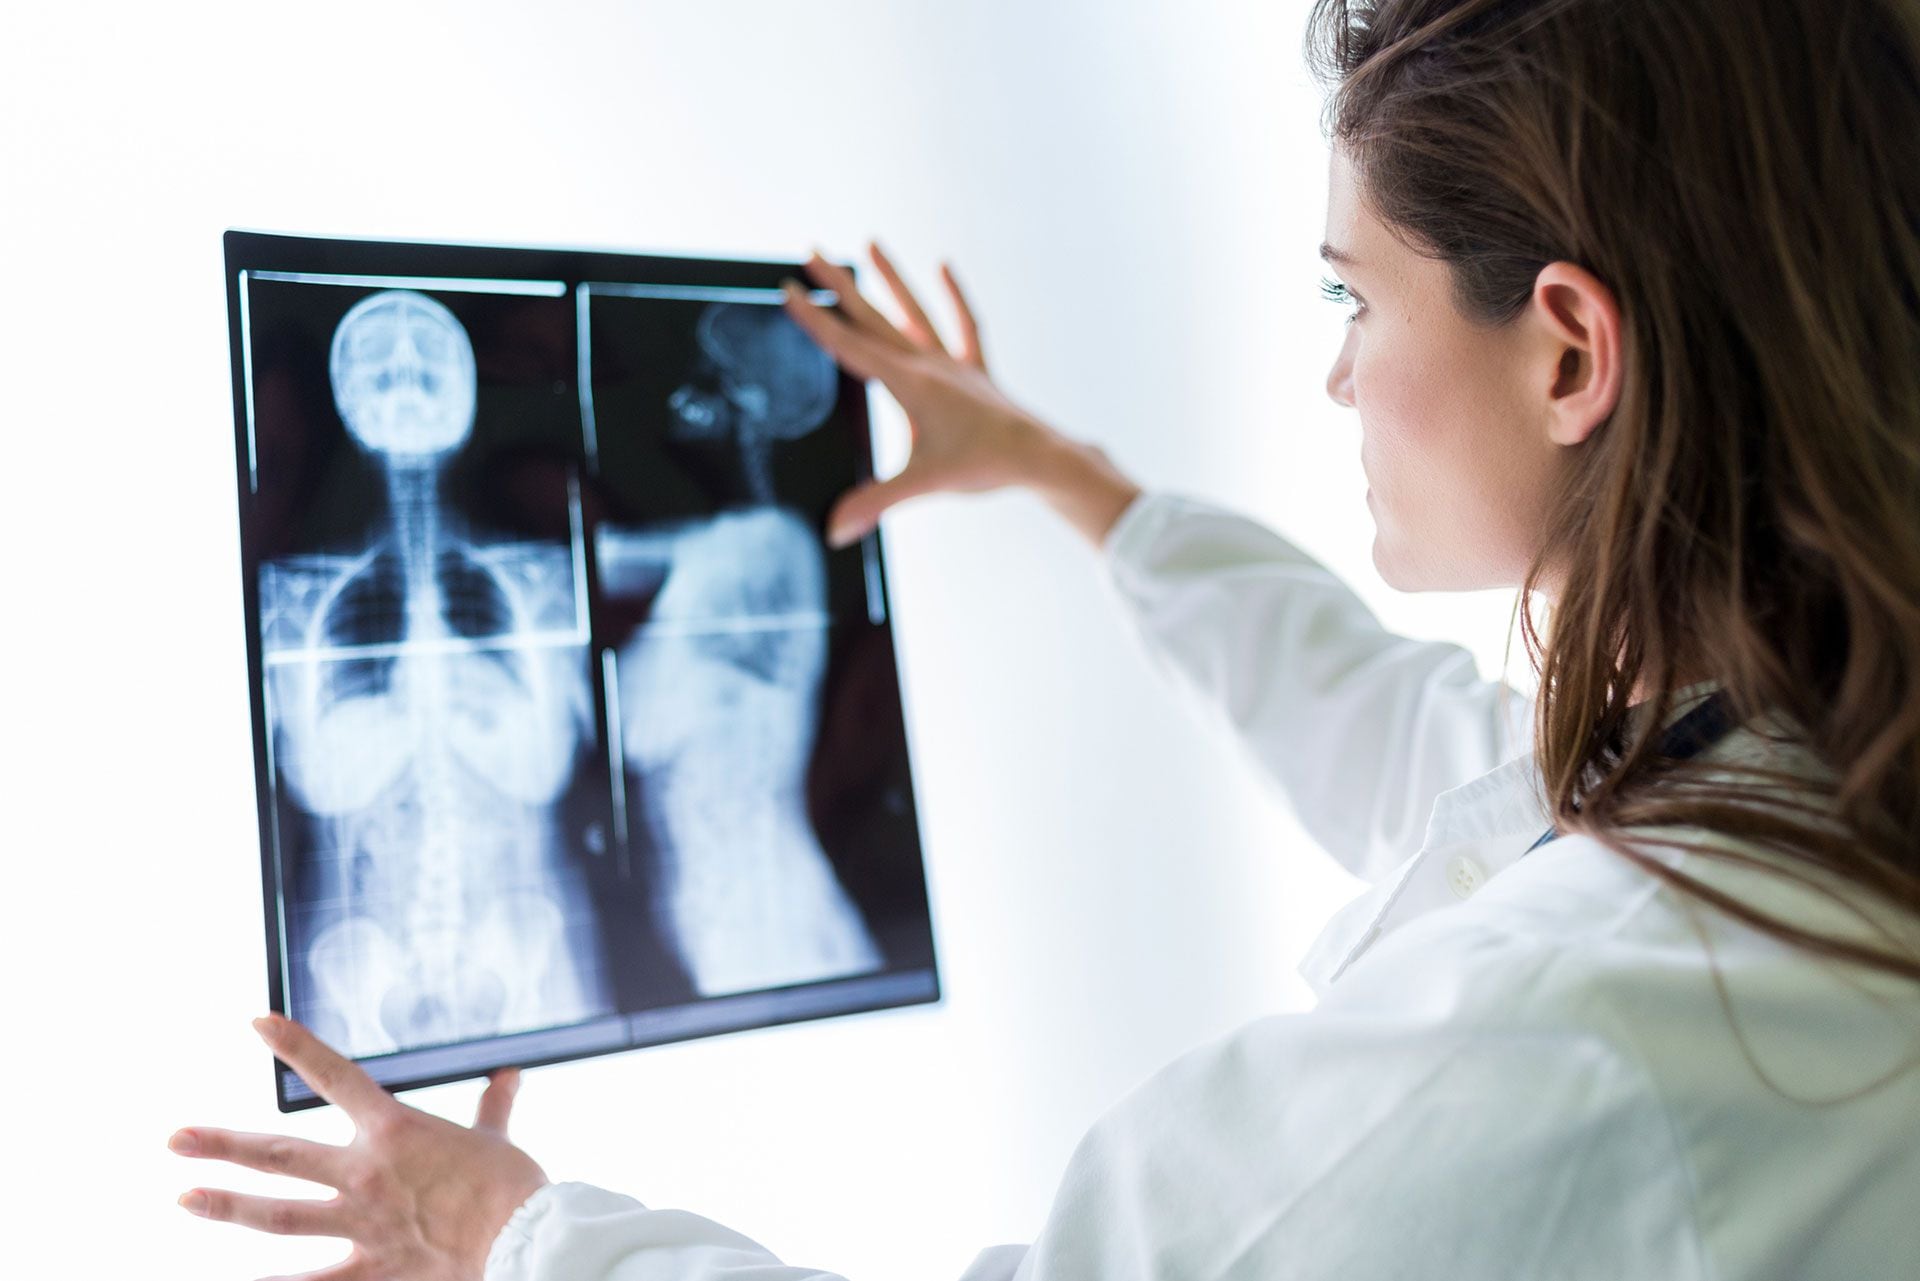 Los resultados provisionales revelan que el cribado con IA detectó un 20% más de cánceres en comparación con la doble lectura rutinaria de las mamografías por dos radiólogos (Getty)